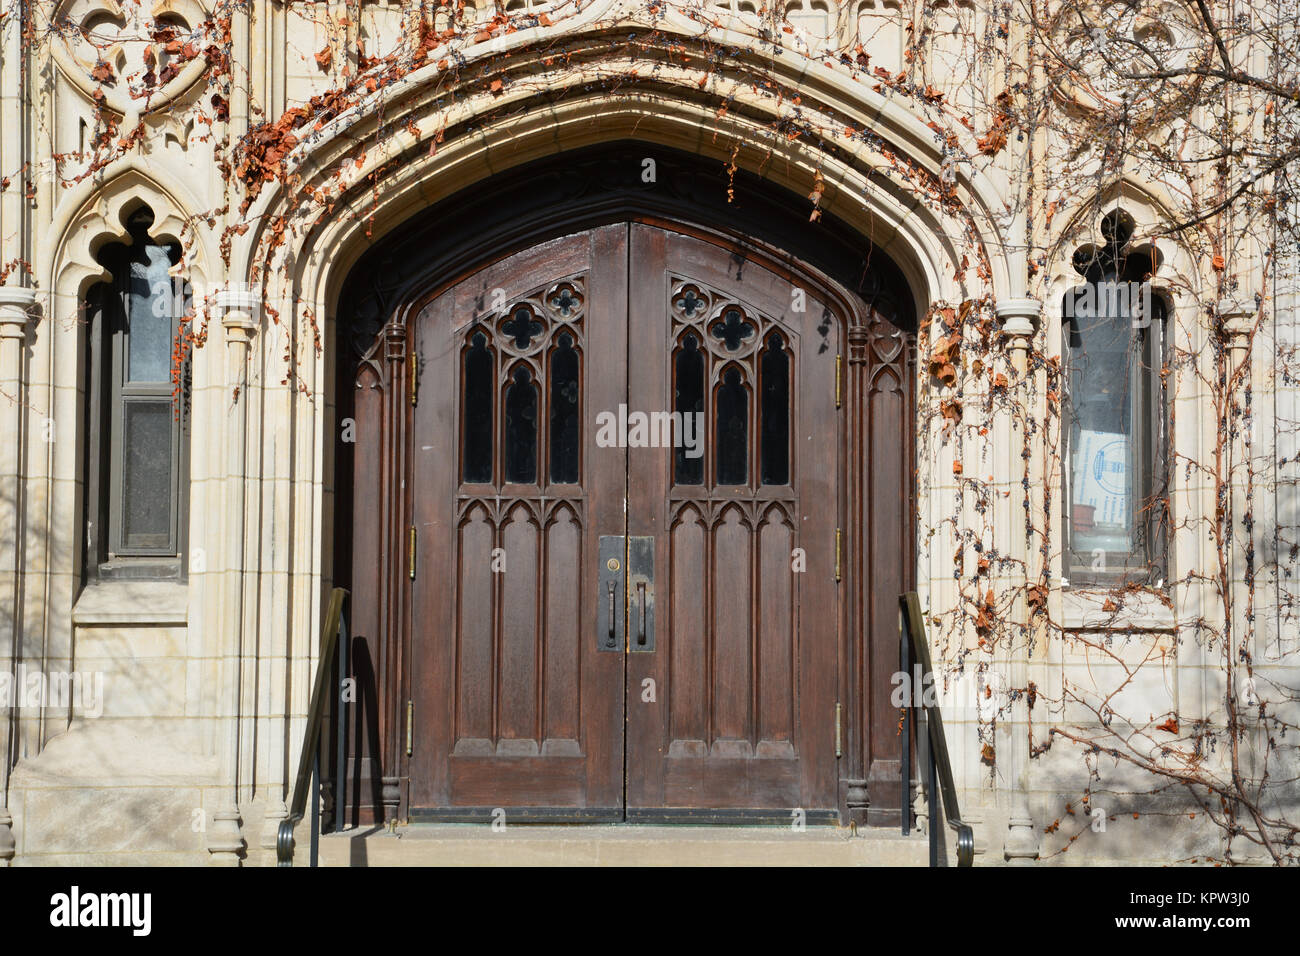 Gotische doppelte Tür Eingangstür in die ryerson Halle Laborgebäude auf dem Campus der Universität von Chicago. Stockfoto